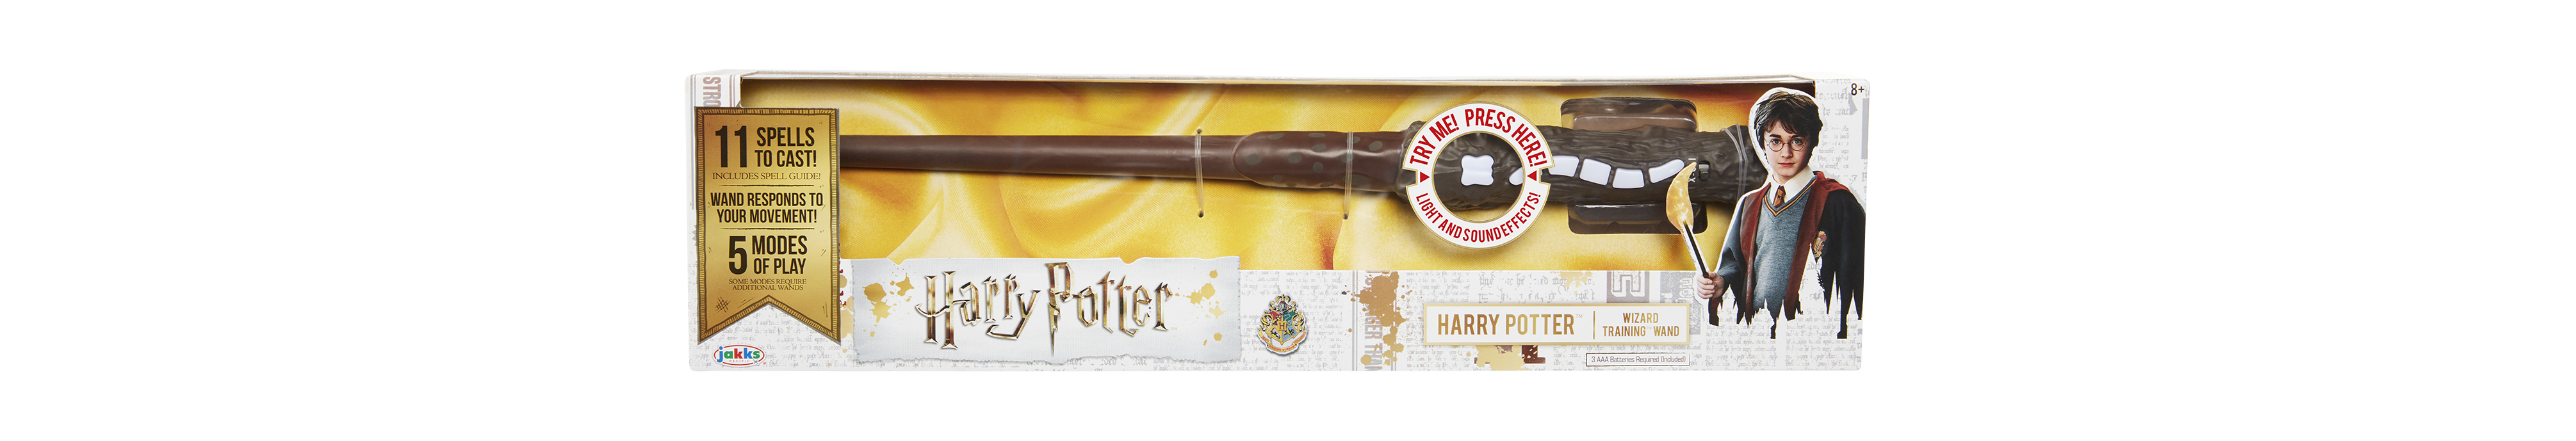 Учебная палочка волшебника Гарри Поттера, £ 24,99, в настоящее время доступна на   Амазонка   а также   златокузнецы